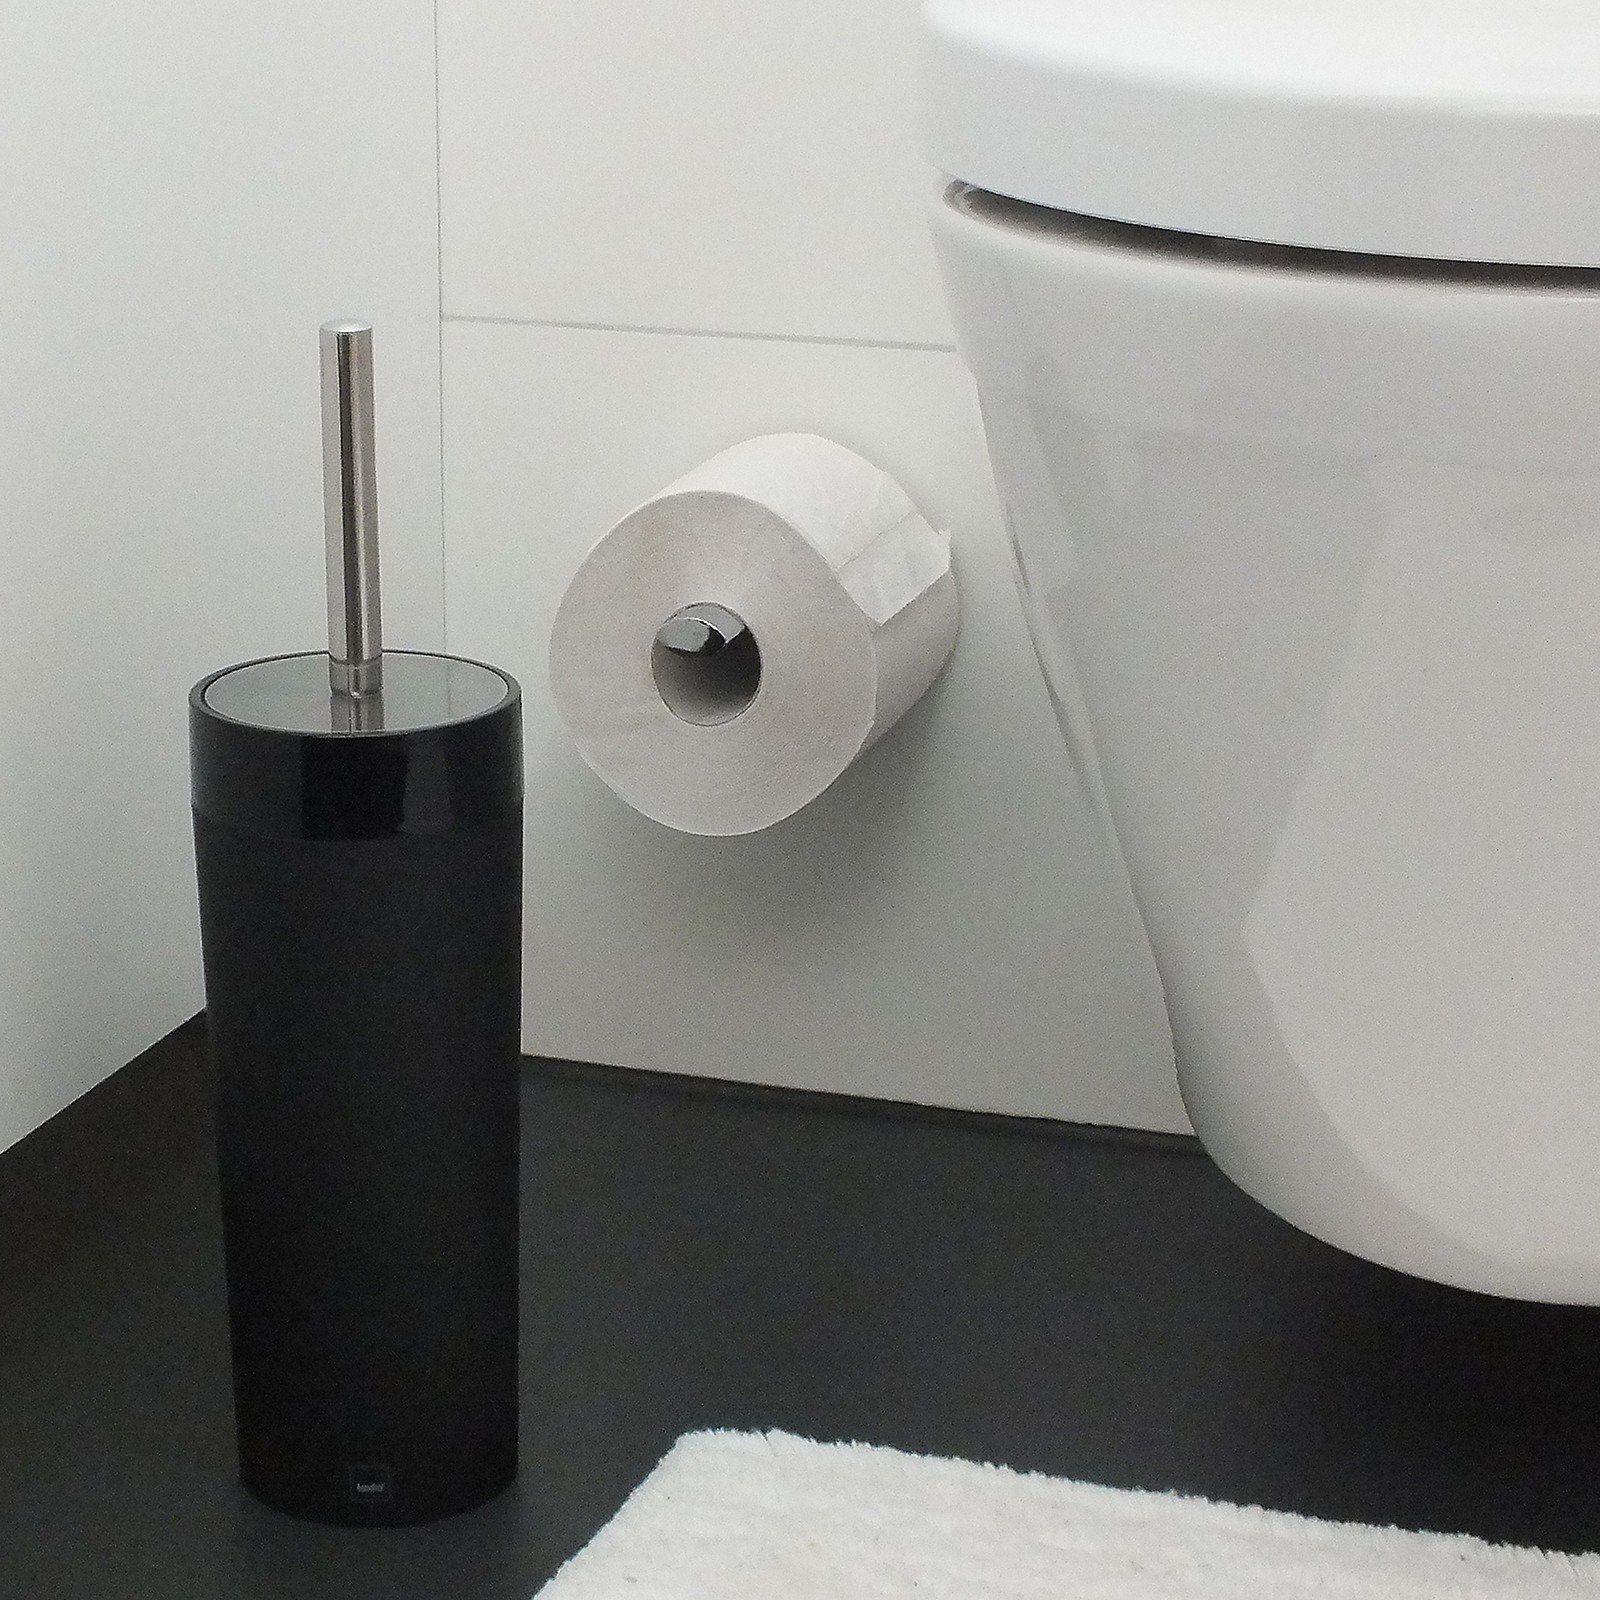 mit samtig Gray, Acrylglasdeckel Oberfläche, schwarz Bürste kela WC-Garnitur raue wechselbare leicht